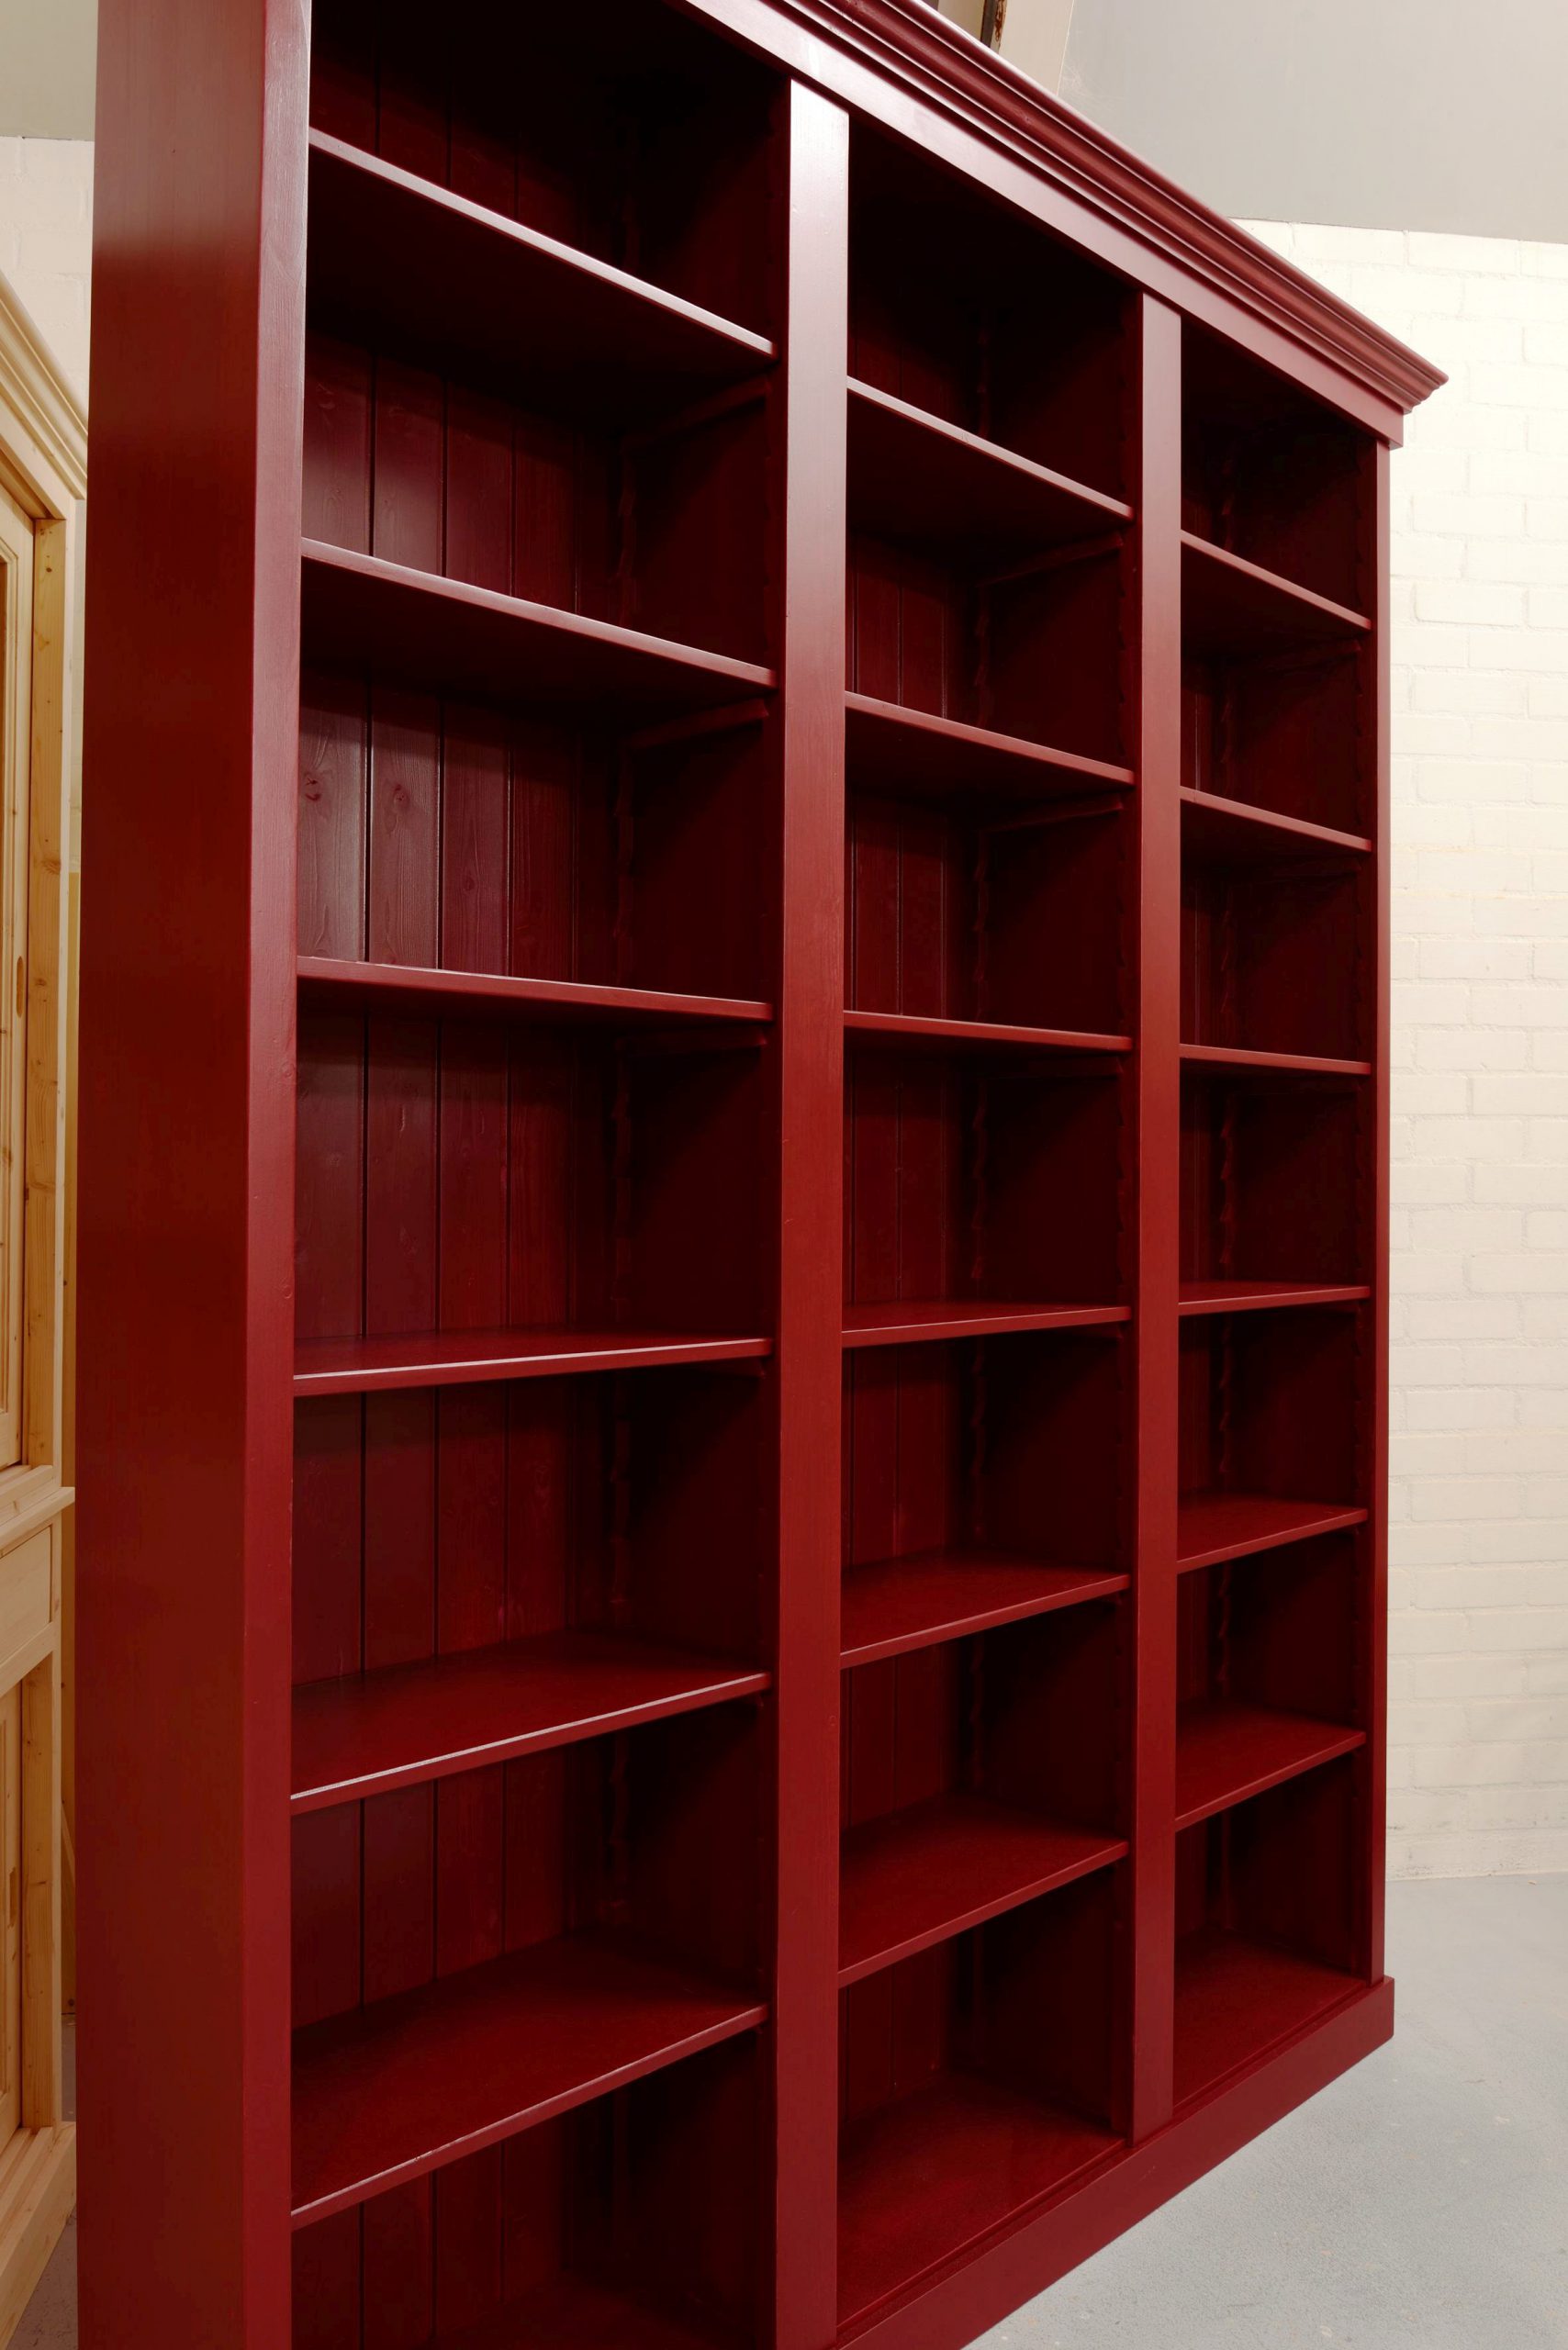 limoen kraan Onderzoek Boekenkast rood - Maatwerk in boekenkasten - de Grenenhoeve